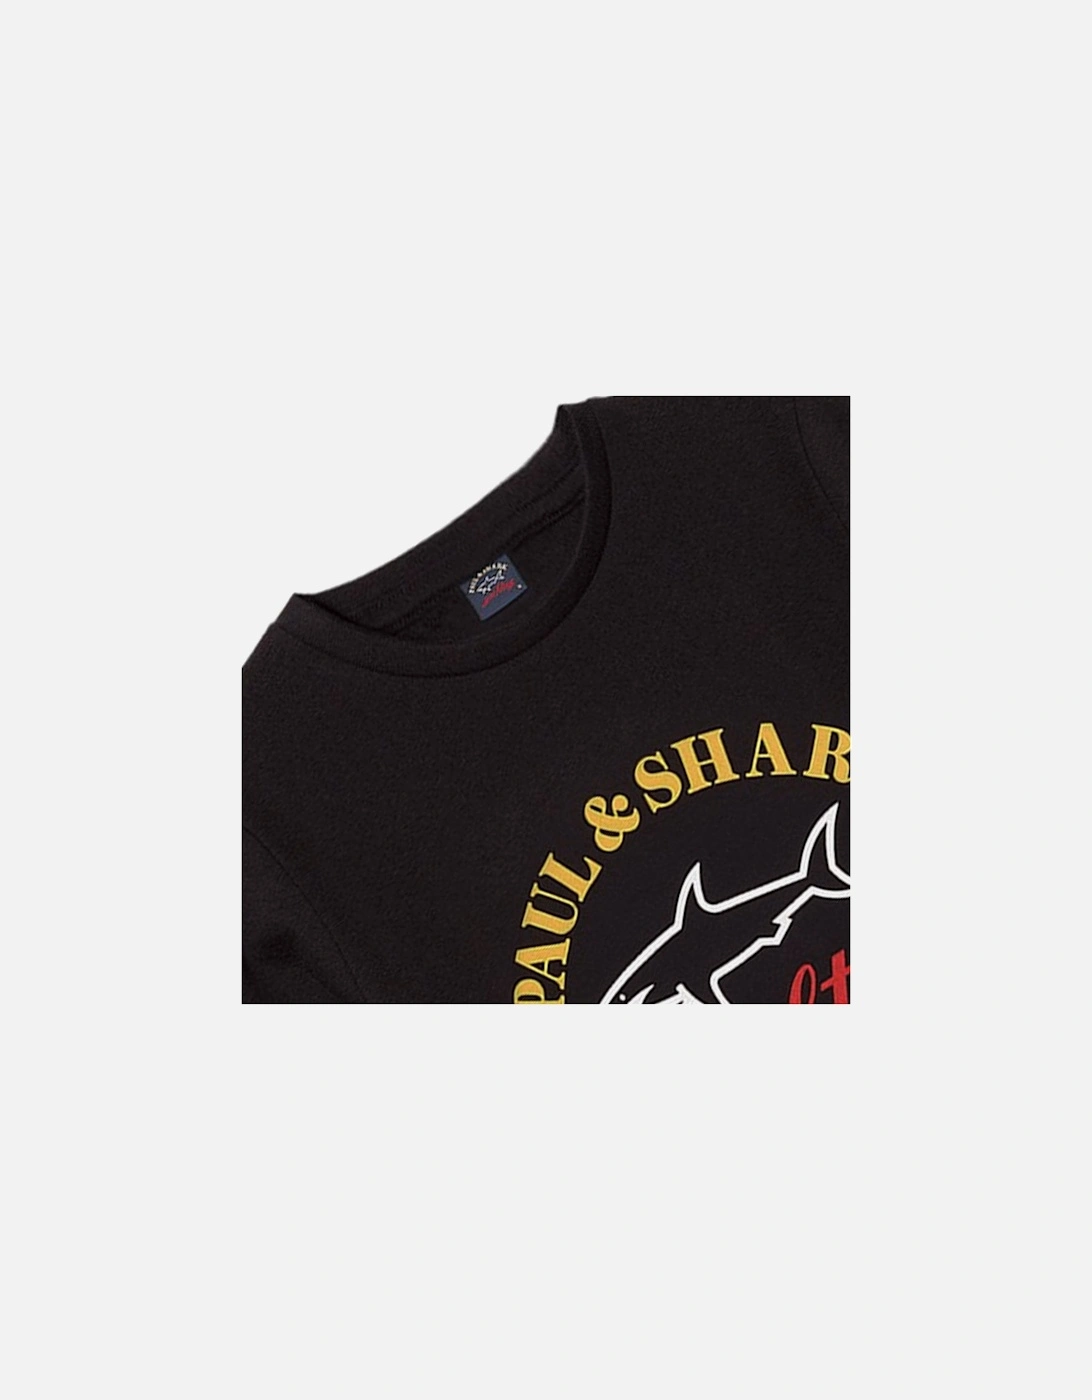 Boy's Long Sleeved Yachting Logo Print T-Shirt Black